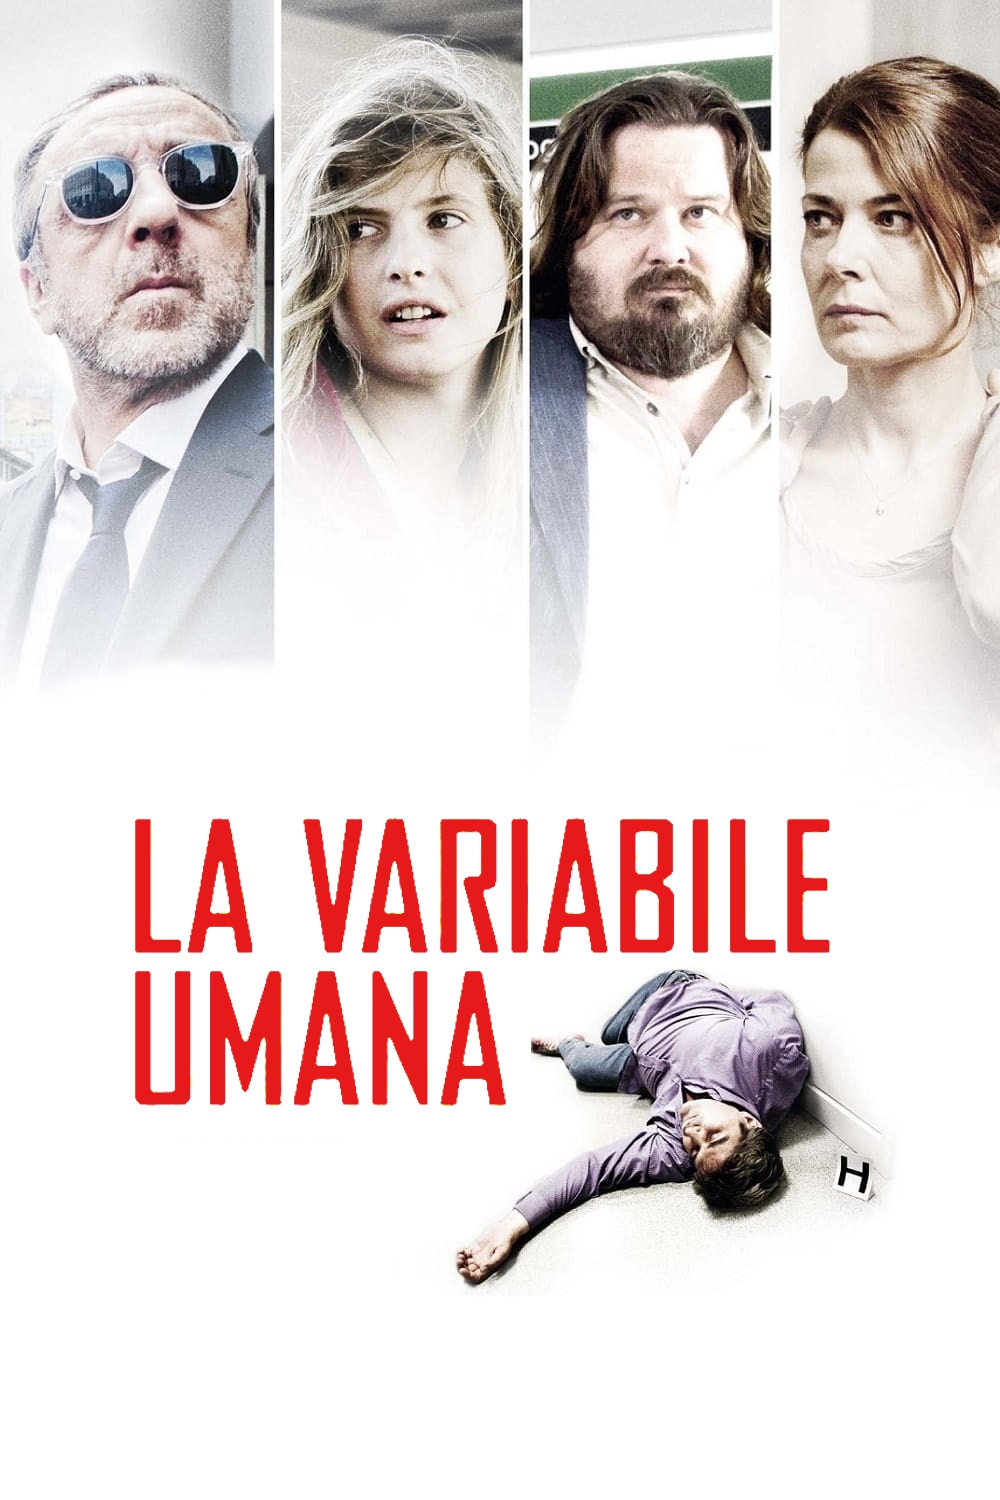 La variabile umana (2013)